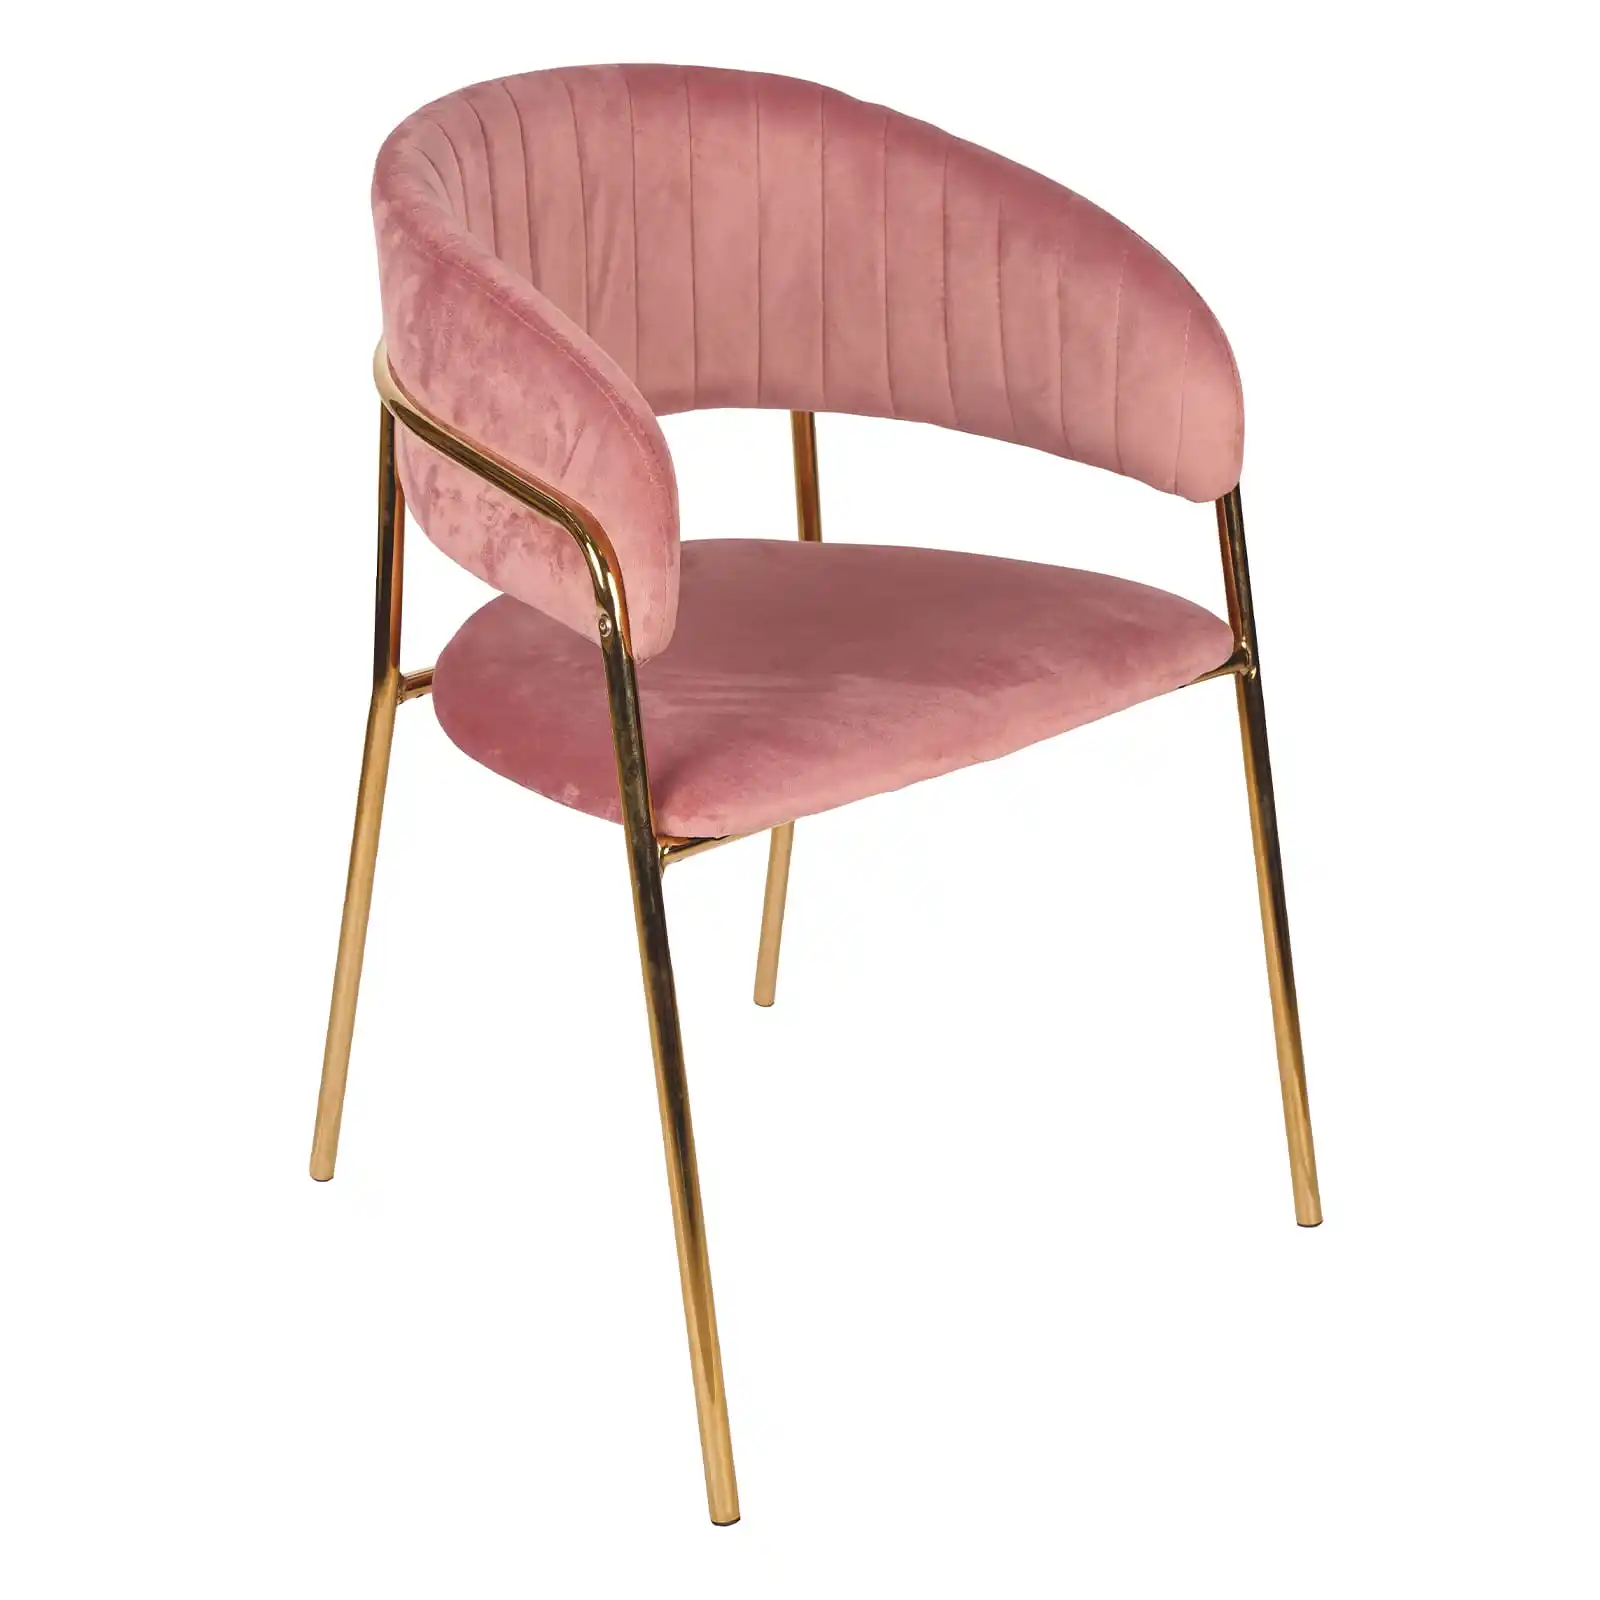 Beludru Modern lapisan kain merah muda Nordik kain sandaran punggung tepi melengkung krim busur kursi makan beludru dengan kaki emas